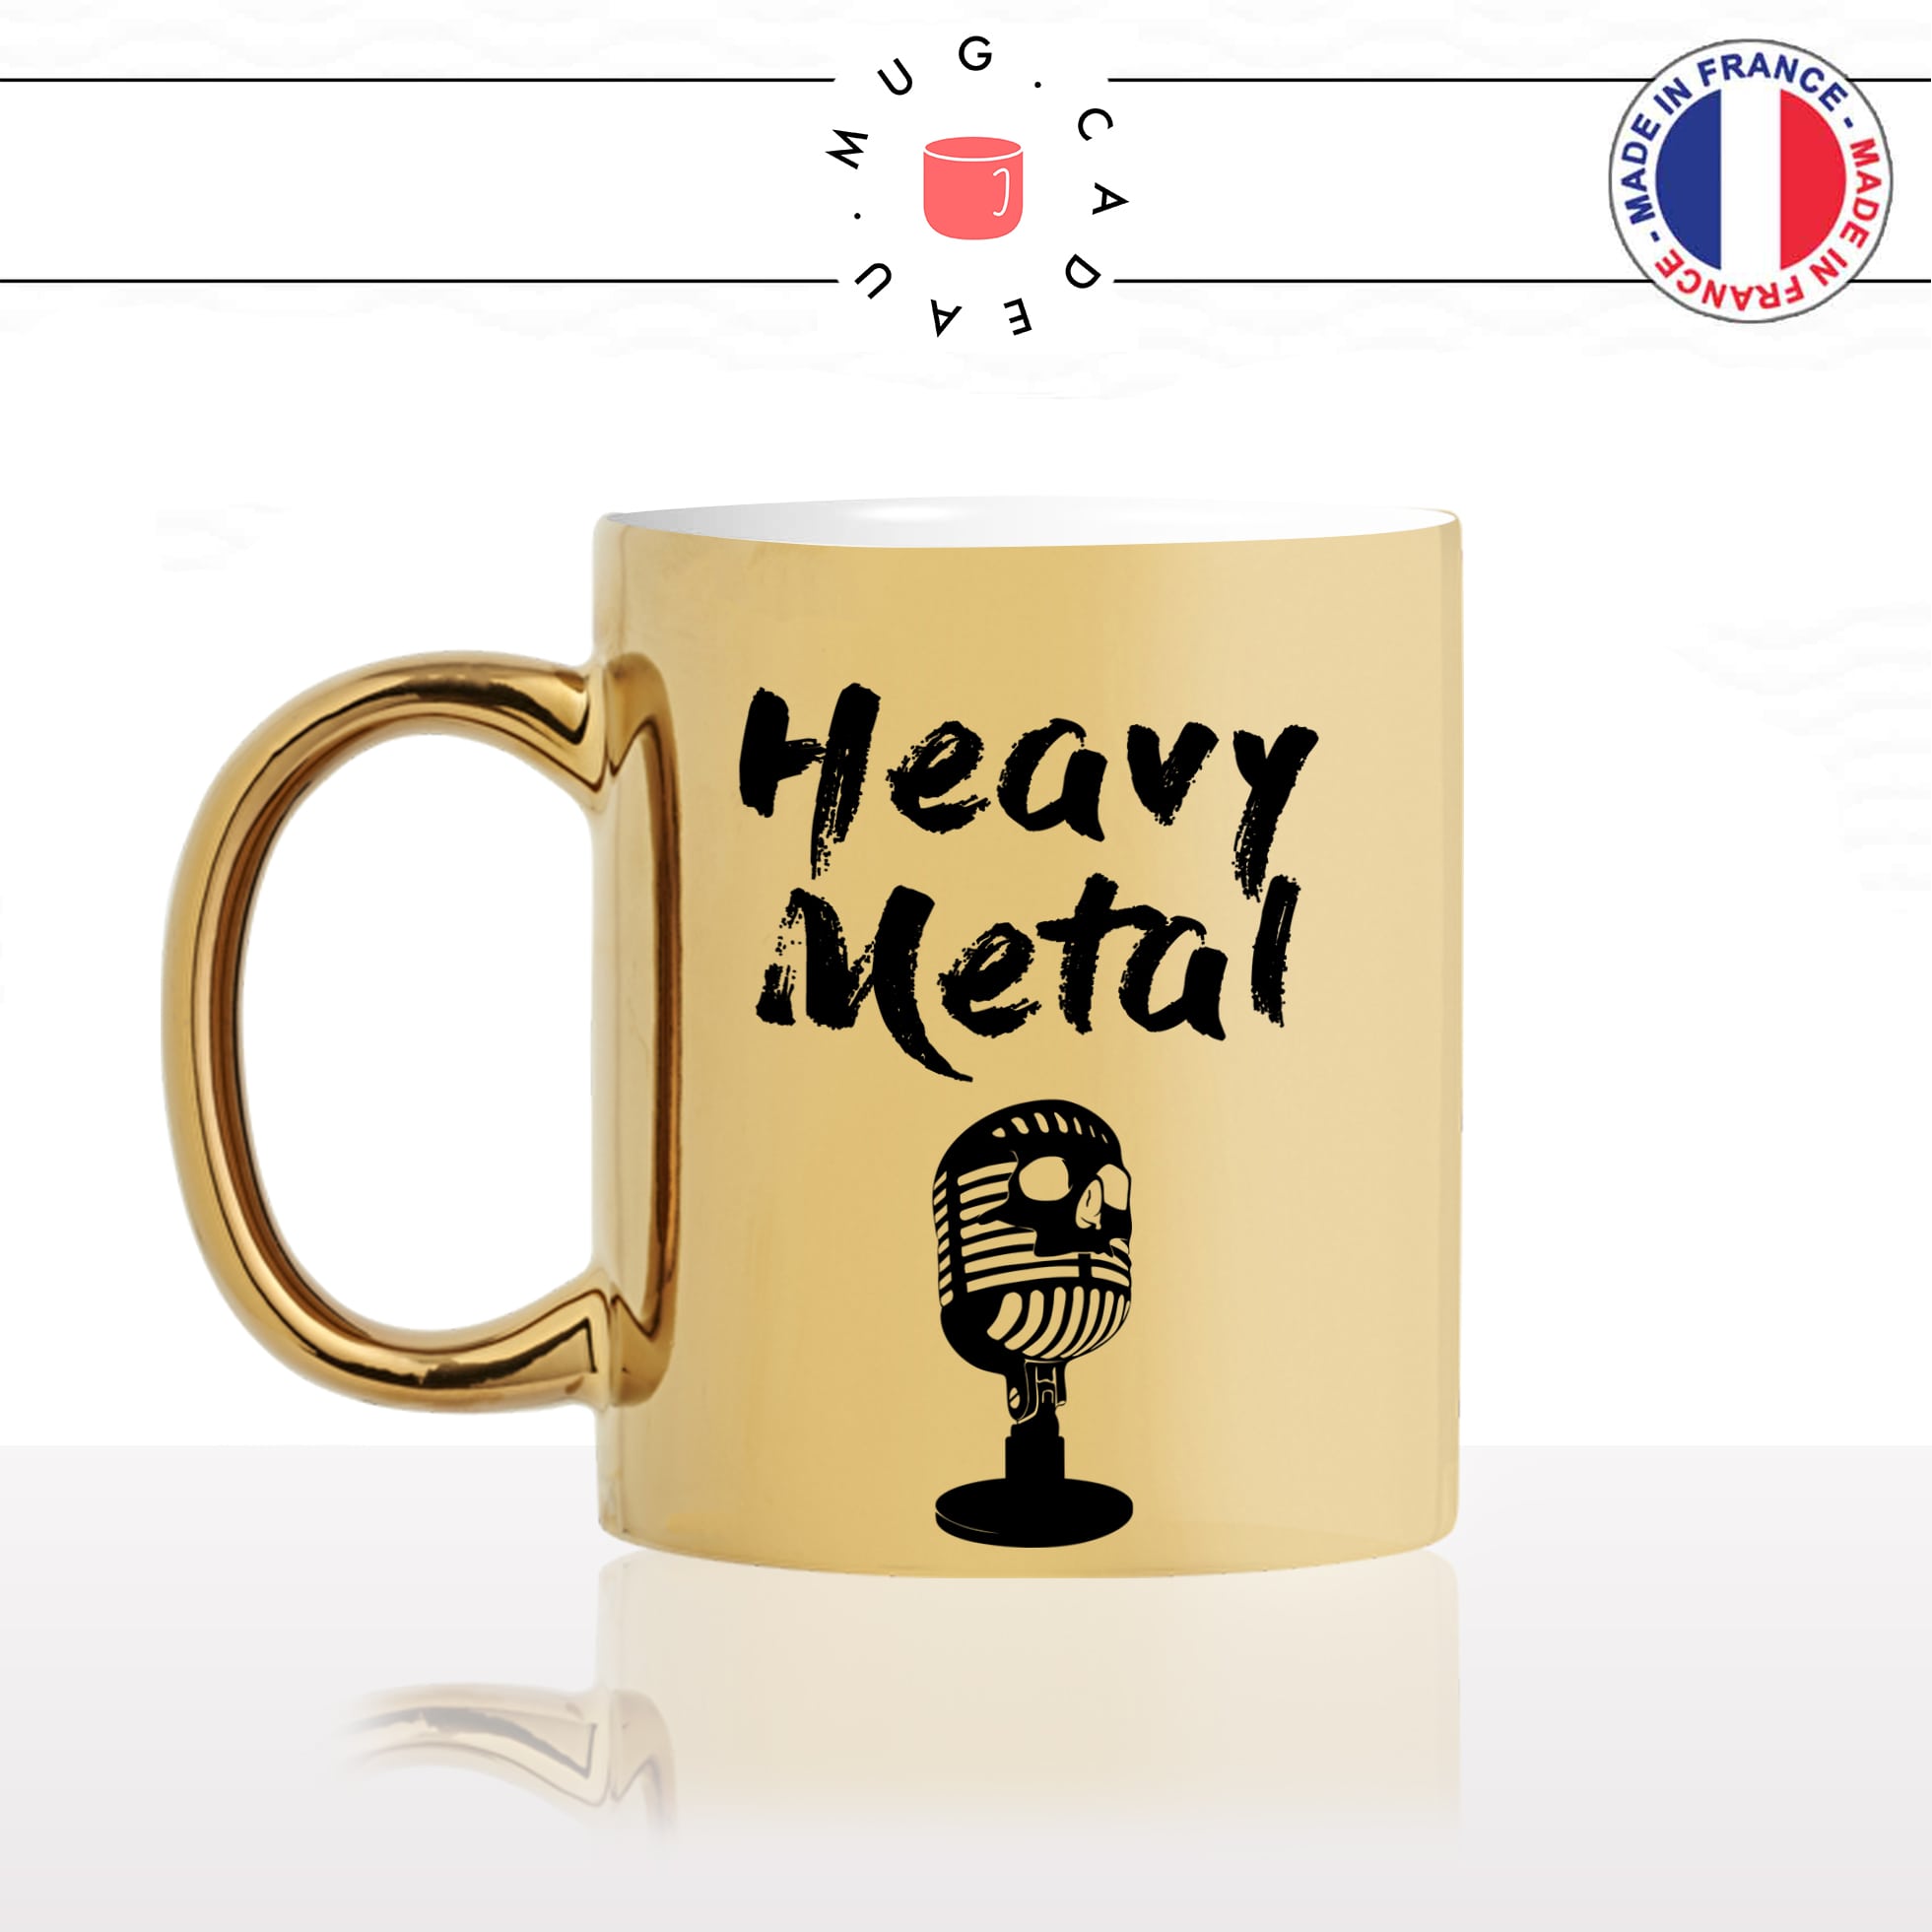 mug-tasse-or-gold-heavy-métal-style-musique-musical-music-micro-tete-de-mort-fan-chanteur-idée-cadeau-originale-fun-personnalisé-café-thé-min